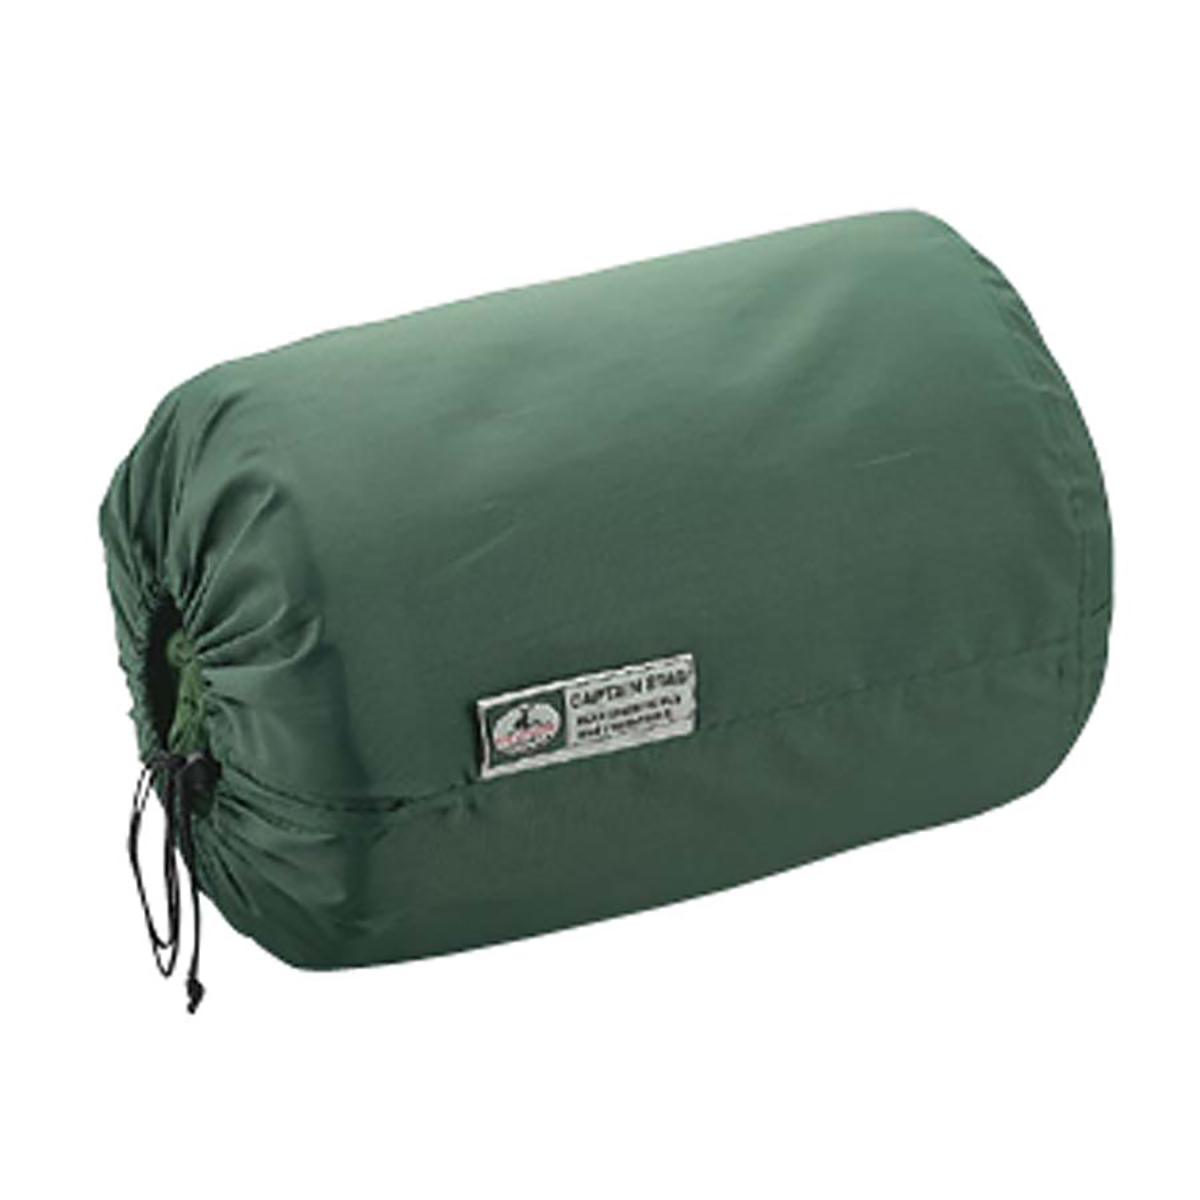 グランデ封筒型シュラフ(寝袋)1400(ピロー付)GR - アウトドア・キャンプ用品 - キャプテンスタッグ